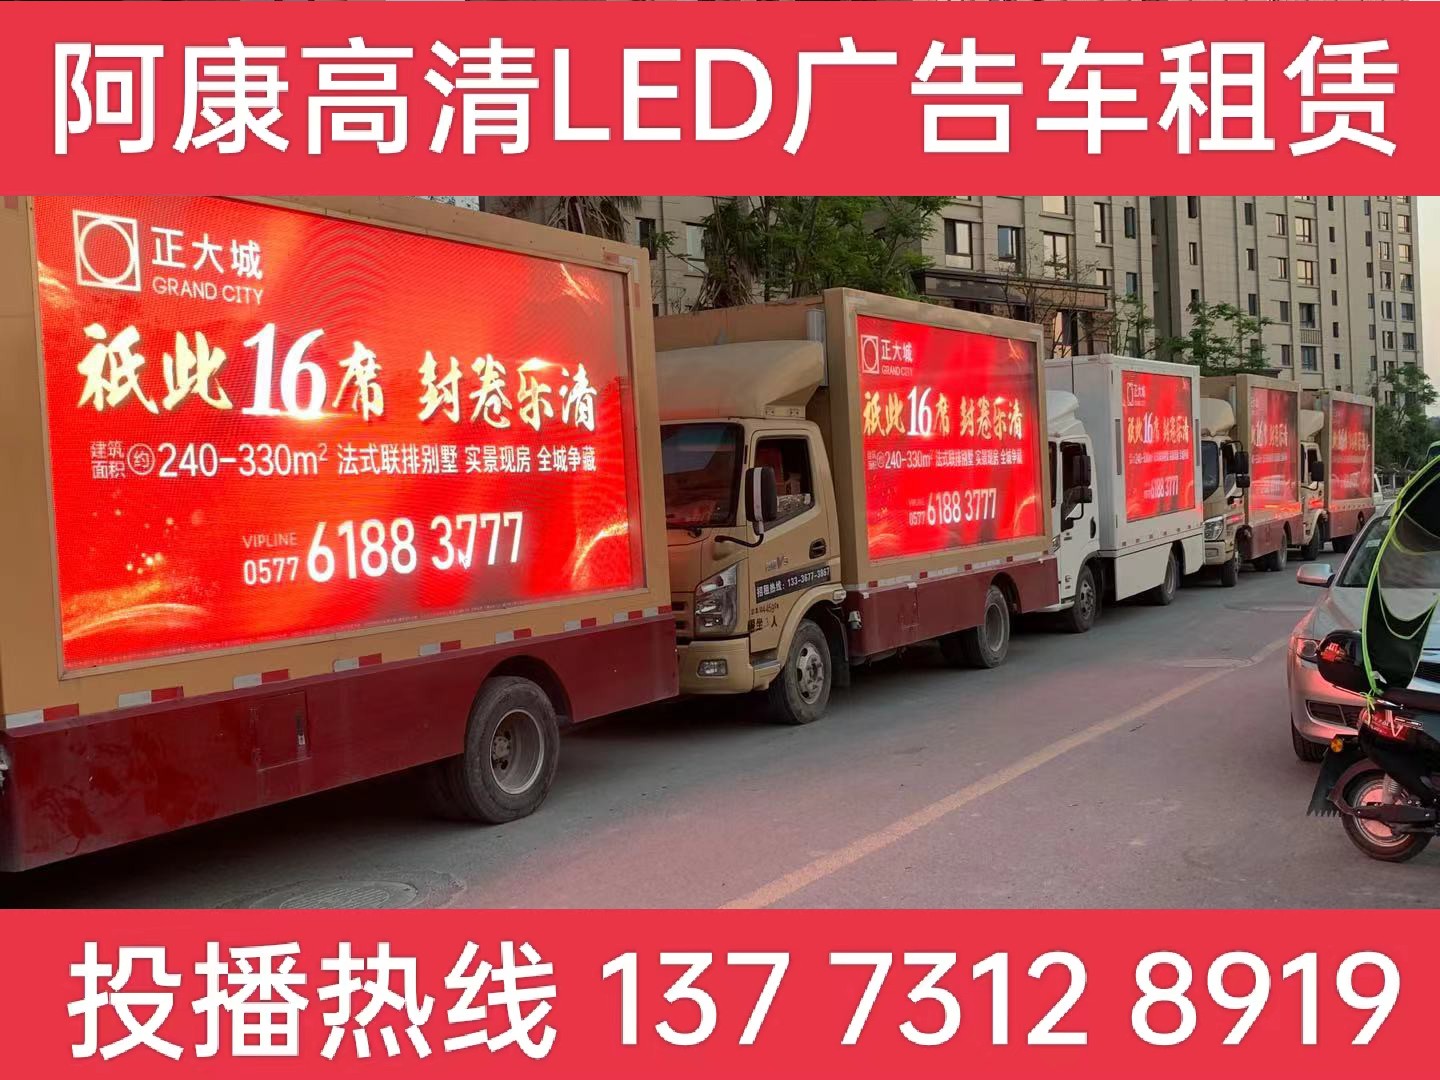 六合区LED广告车出租